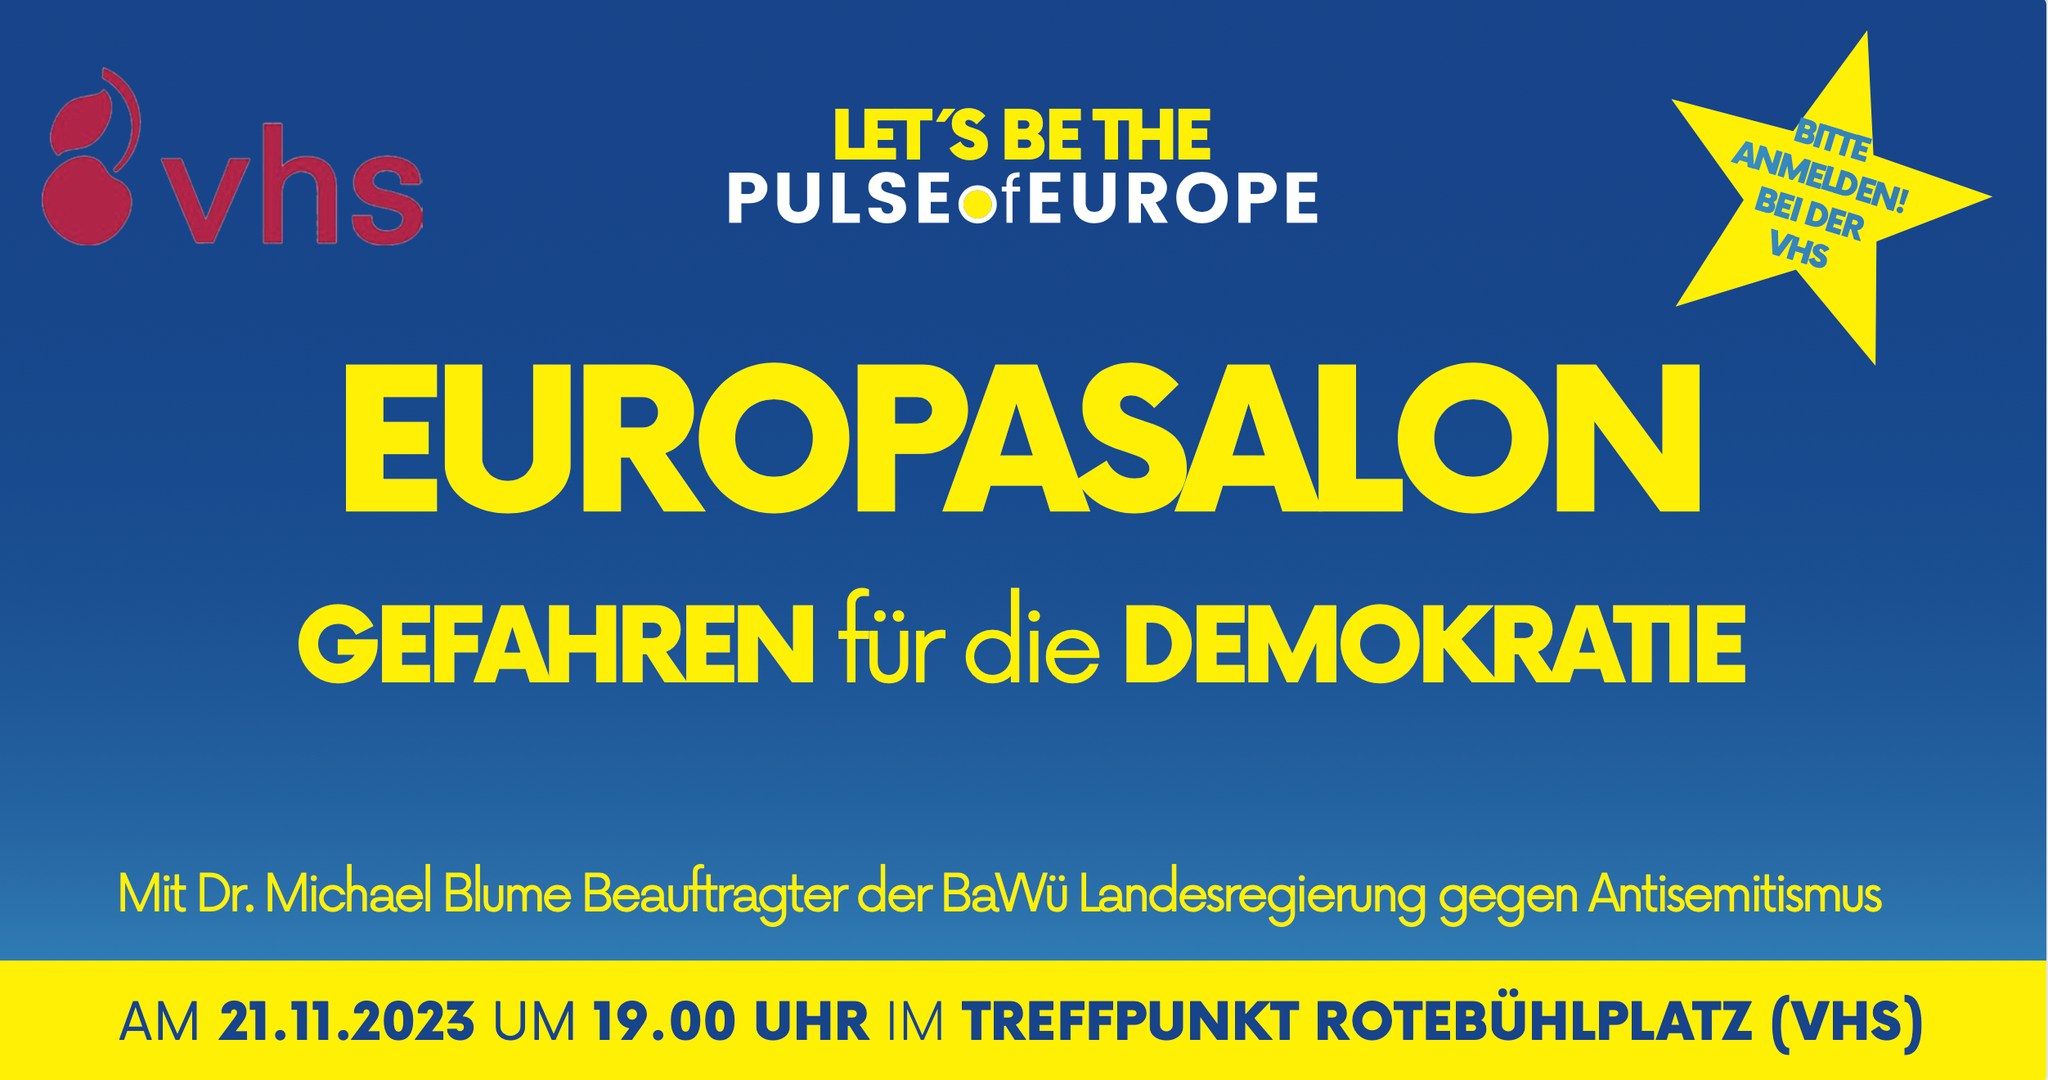 PoE Stuttgart: Europasalon „Gefahren für die Demokratie“